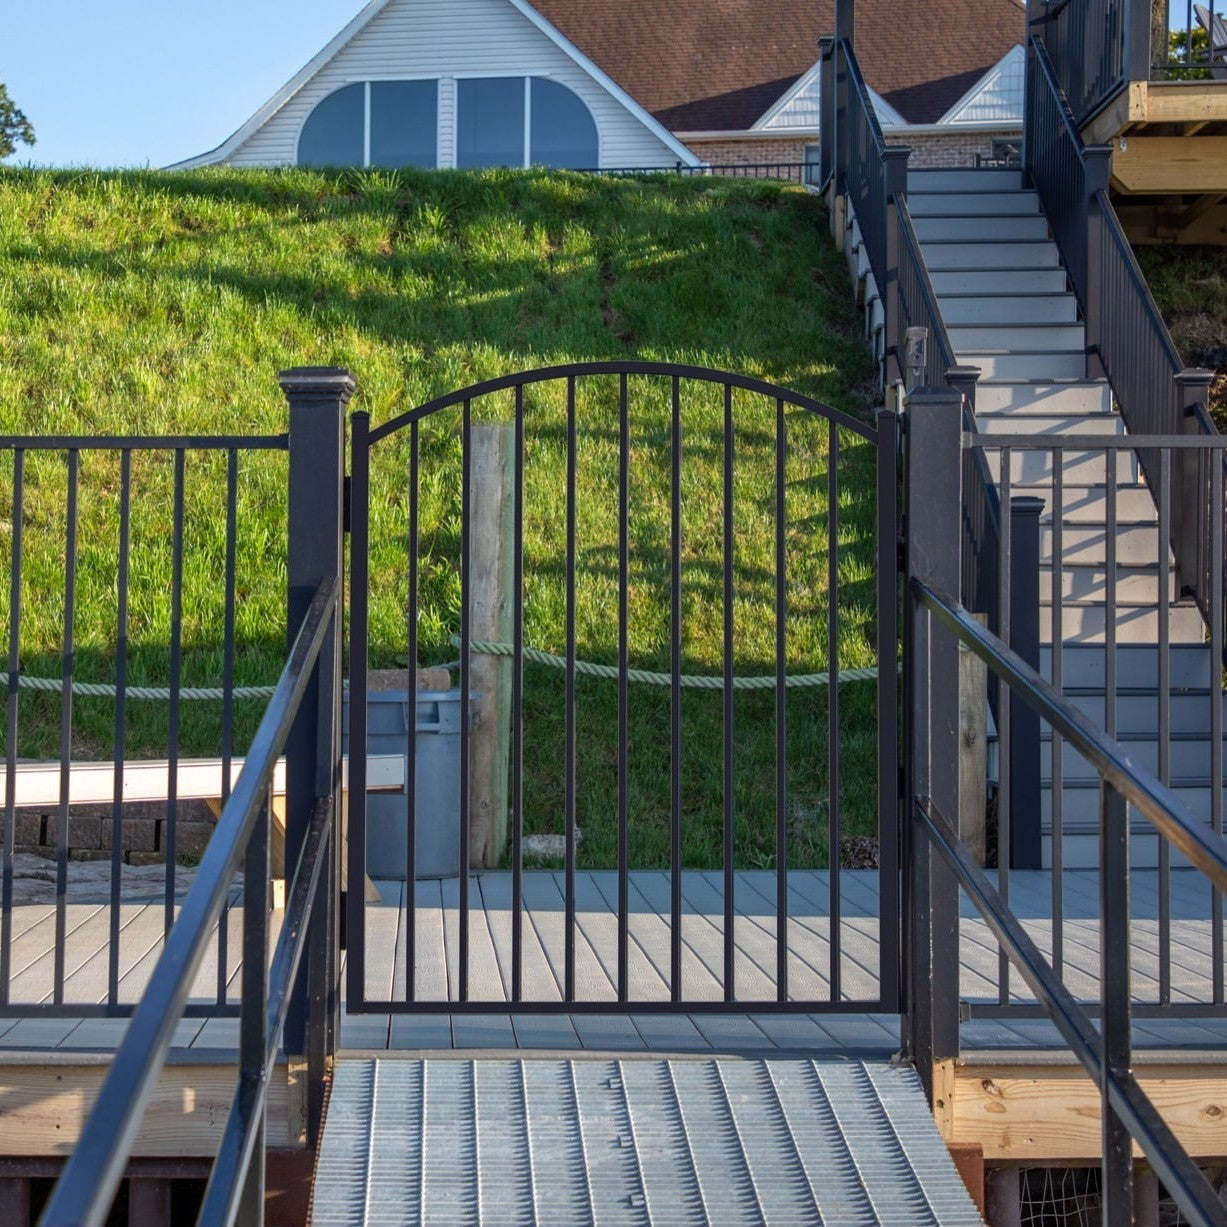 Bedrock Harbor Series - Arched Gate - 4' x 4'-Aluminum Fence Gates-ActiveYards-Black-FenceCenter